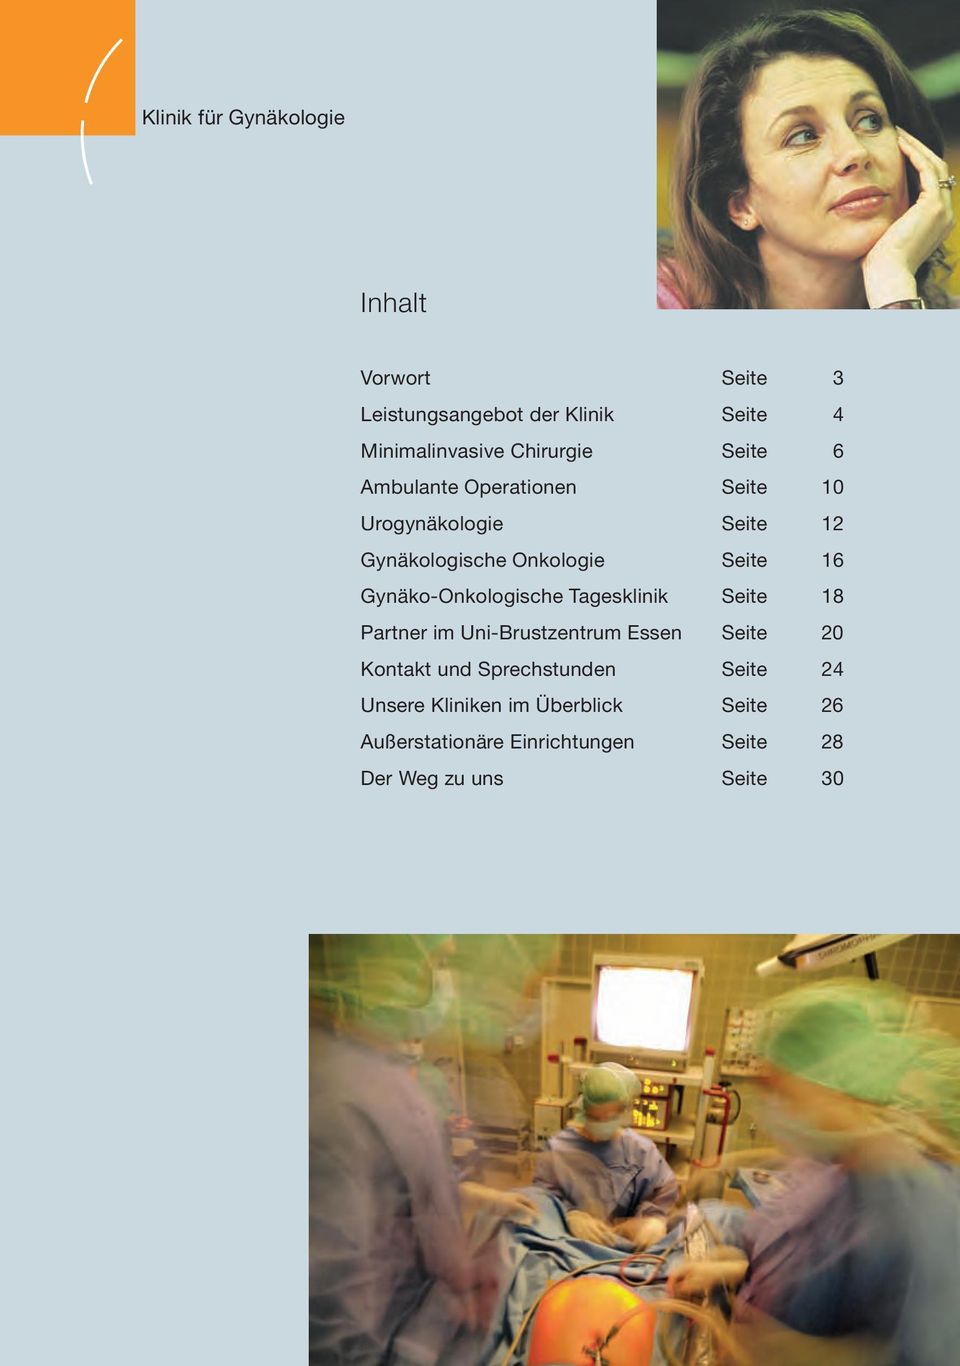 16 Gynäko-Onkologische Tagesklinik Seite 18 Partner im Uni-Brustzentrum Essen Seite 20 Kontakt und